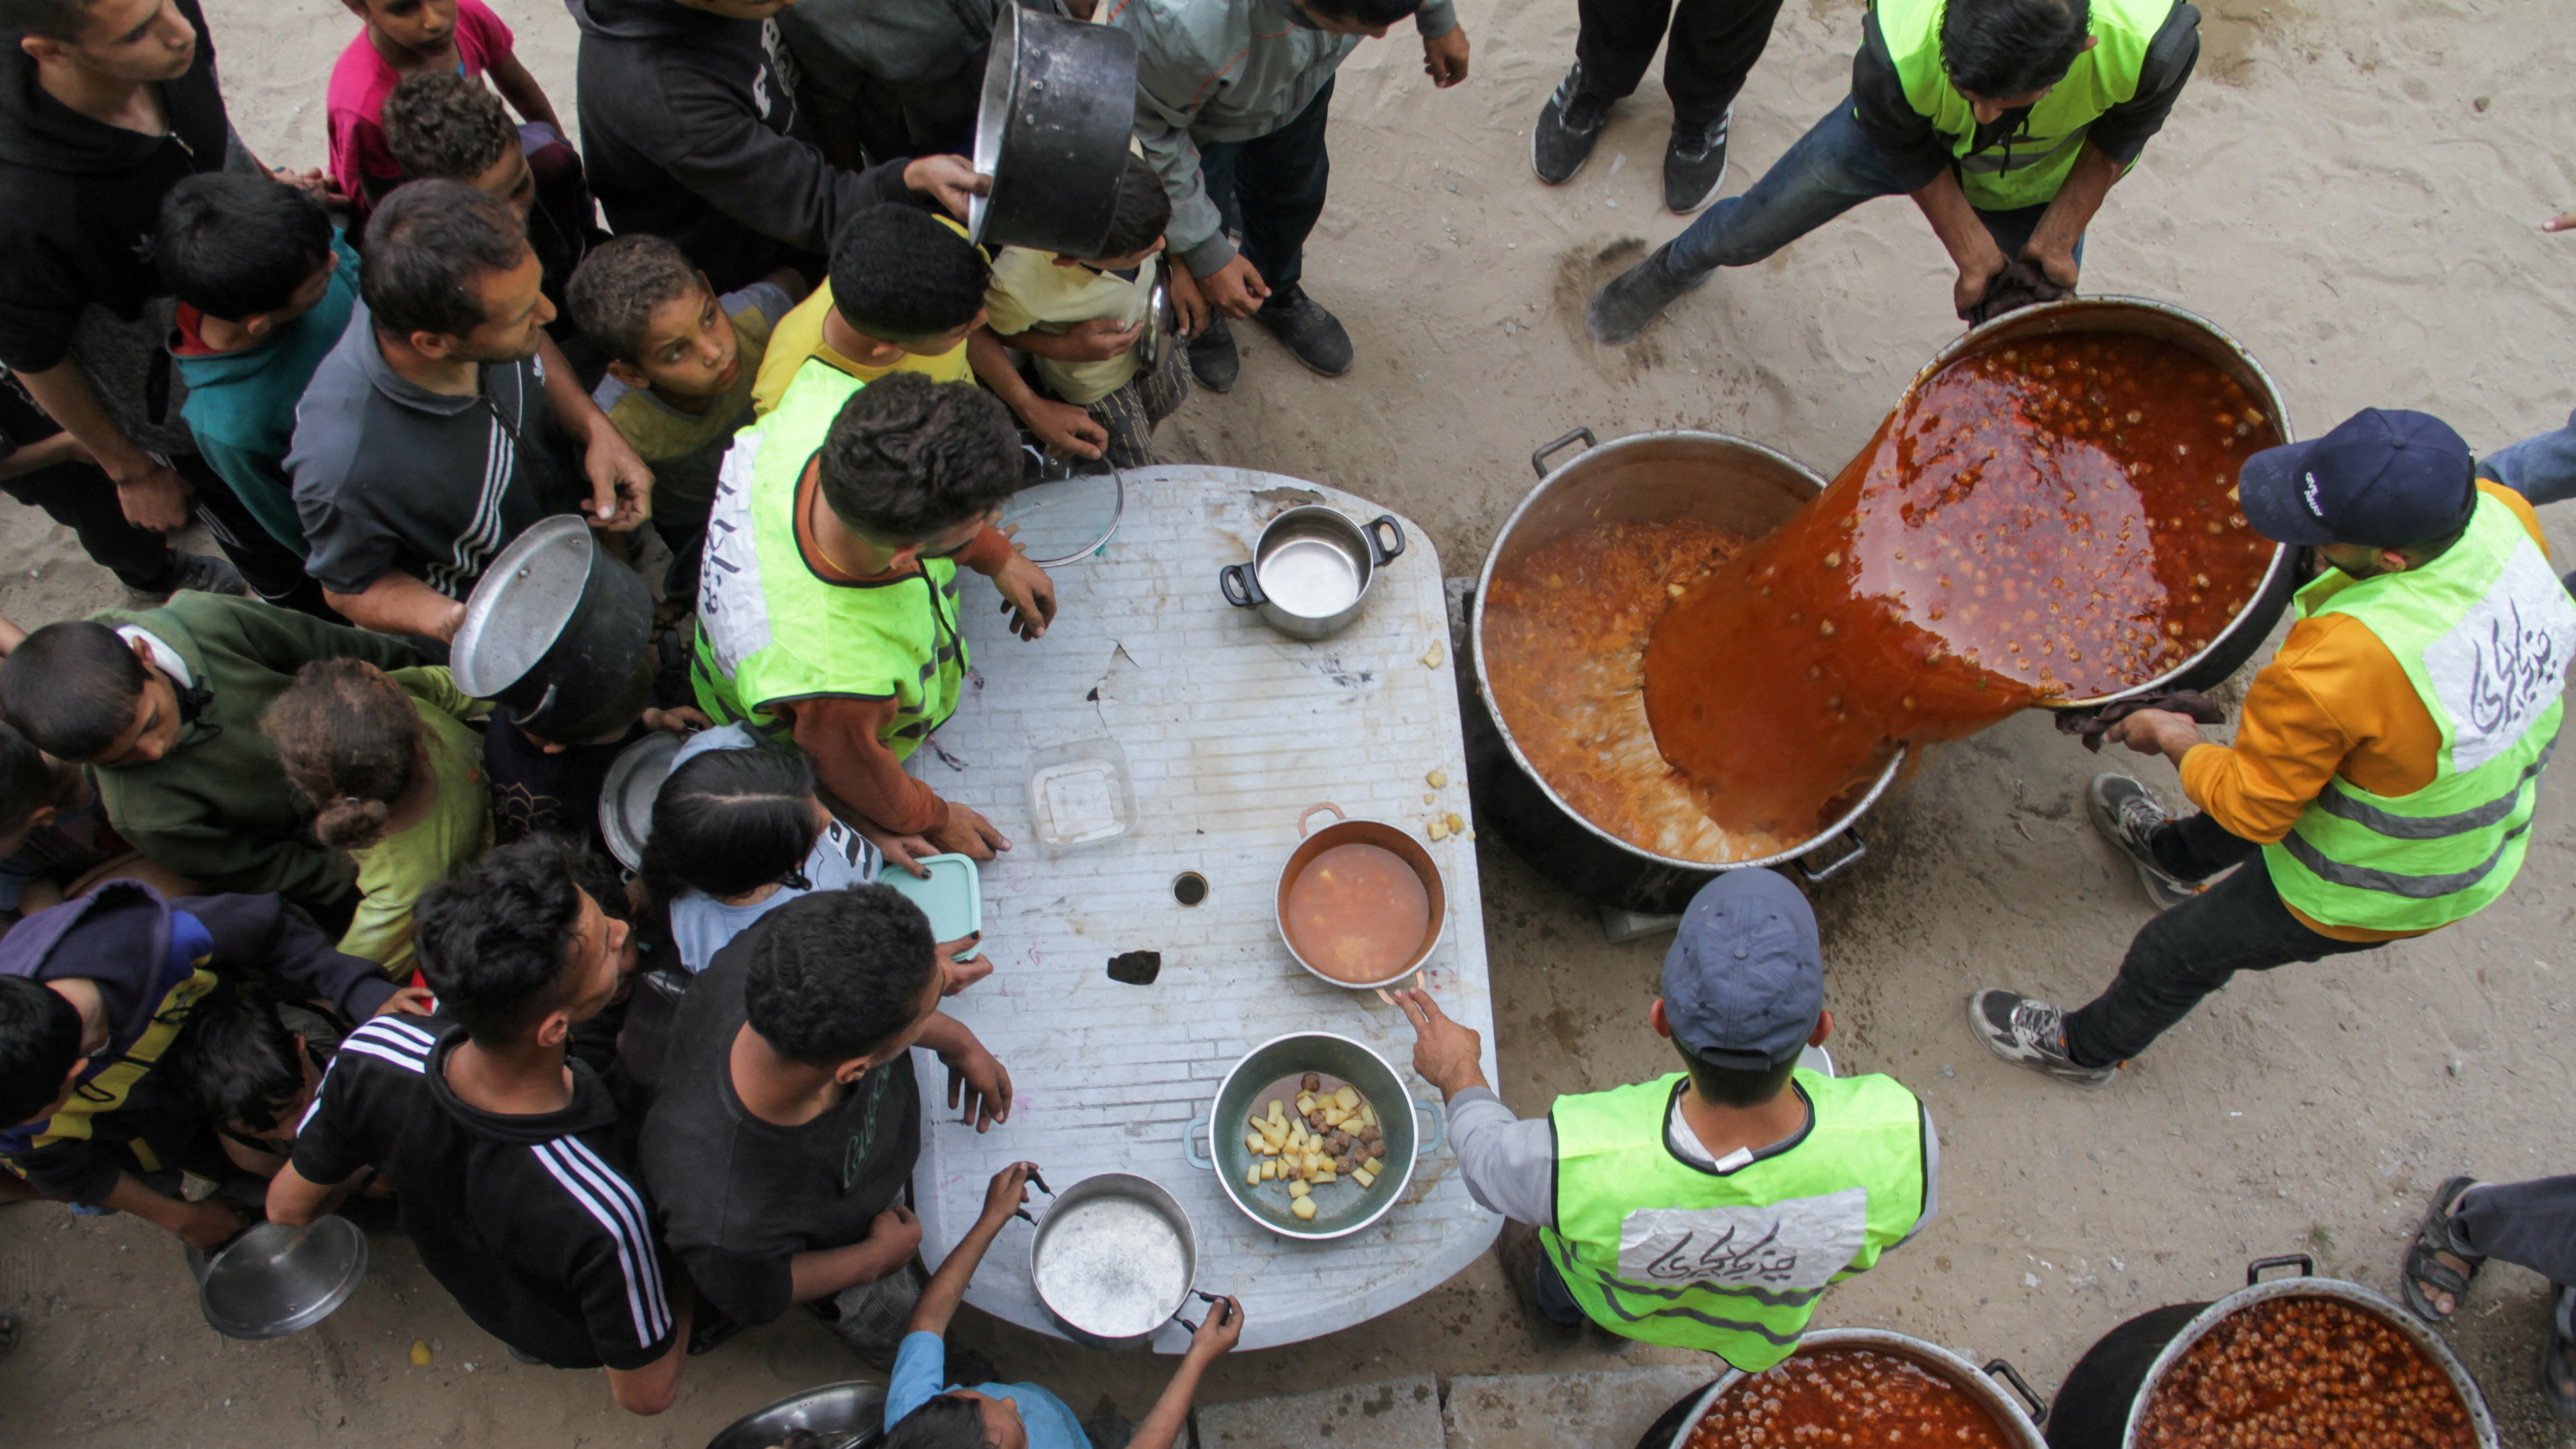 Volunteers feed displaced families in Jabalia./Mahmoud Issa/REUTERS